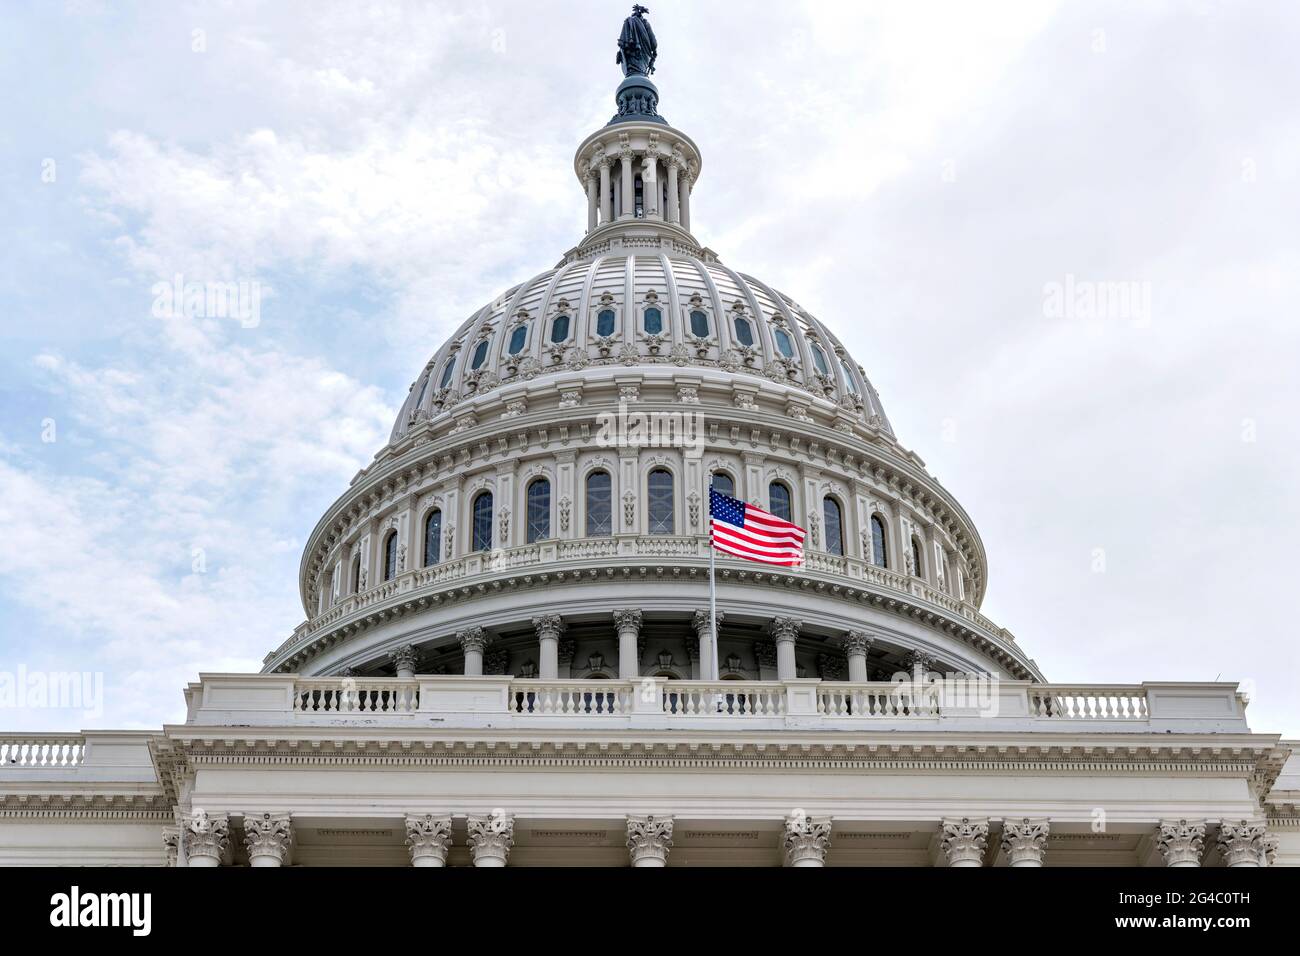 The Dome - VUE rapprochée à faible angle d'un drapeau national américain qui survole devant le dôme du bâtiment du Capitole. Washington, D.C., États-Unis. Banque D'Images